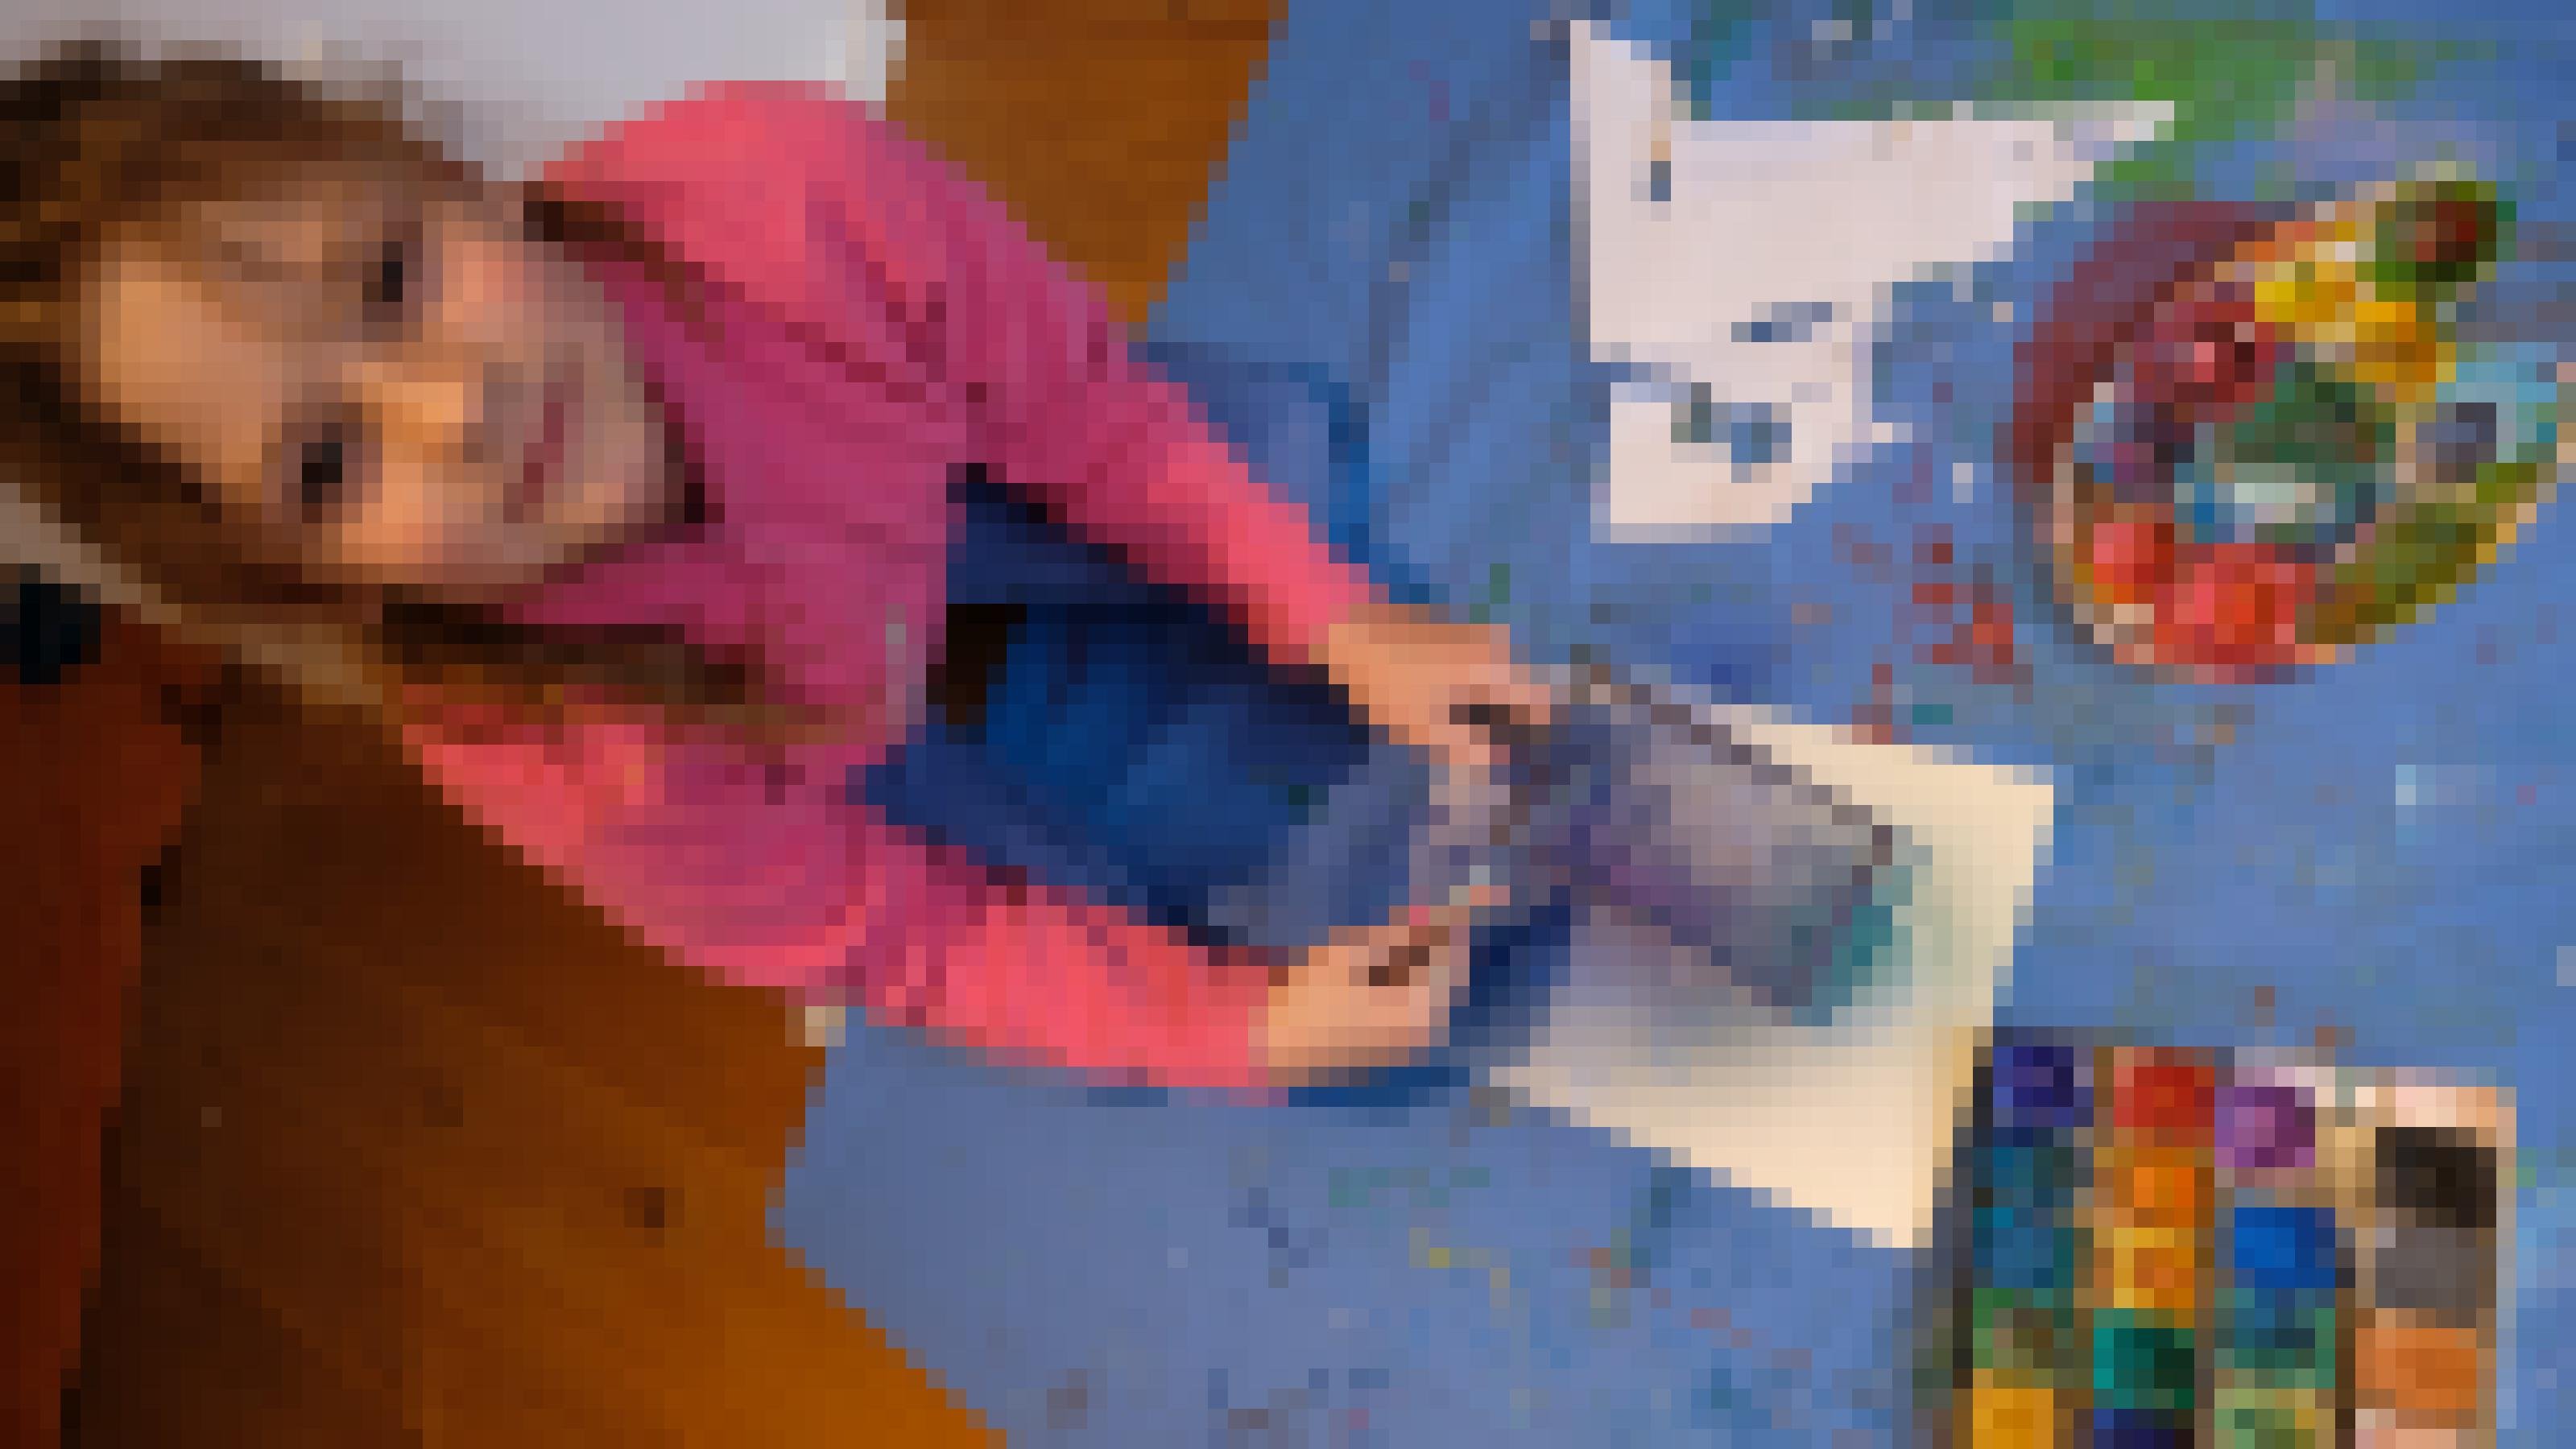 Auf einer blauen Wachstischdecke hockt die achtjährige Orla über ihrem Blatt Papier. Vor ihr liegen der Wasserfarbkasten und eine bunte Palette zum Farbenmischen. Sie guckt in die Kamera. Links hält sie ein Sieb, rechts eine Zahnbürste mit Farbe. Auf dem Papier sind schon ein paar Spritzer verteilt.